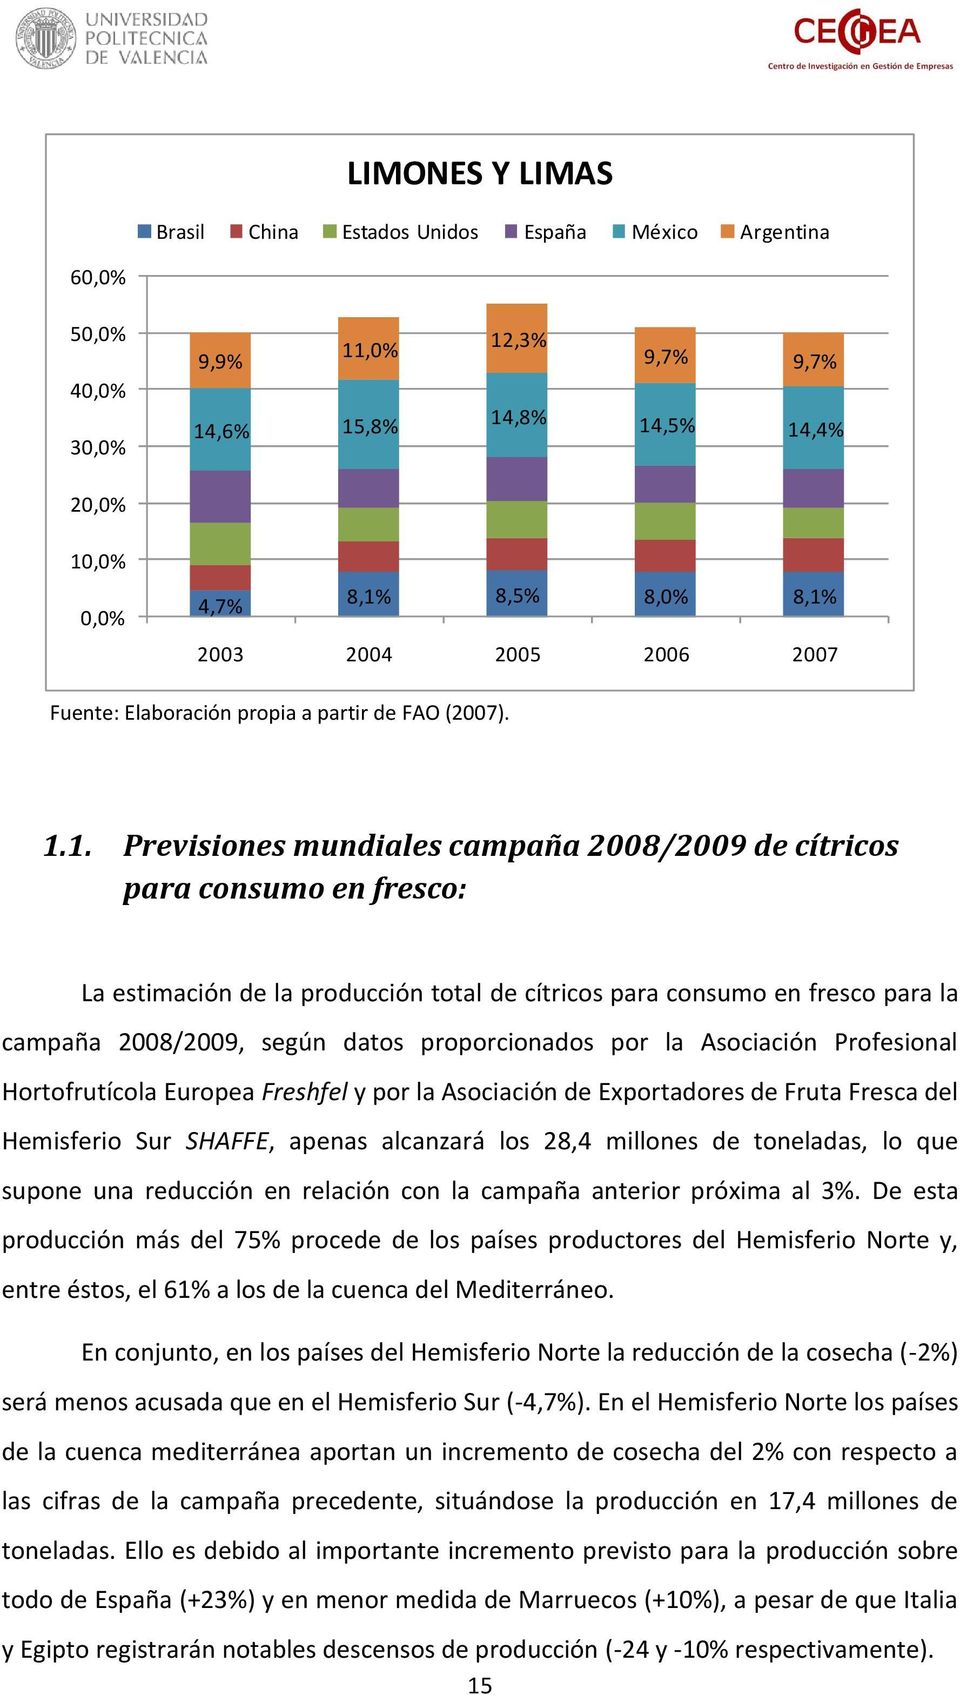 1. Previsiones mundiales campaña 2008/2009 de cítricos para consumo en fresco: La estimación de la producción total de cítricos para consumo en fresco para la campaña 2008/2009, según datos